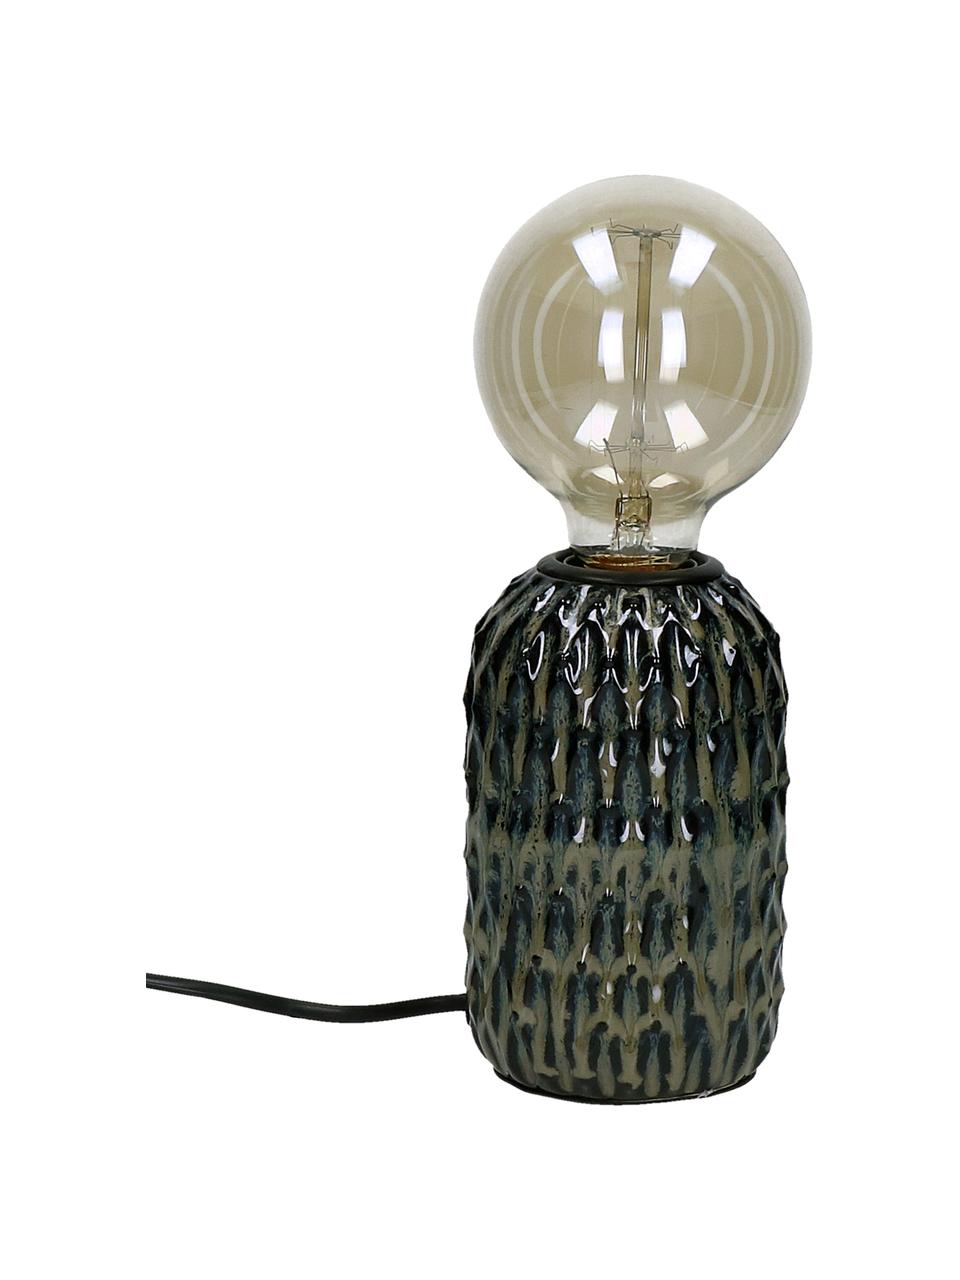 Kleine Keramik-Tischlampe Luz in Dunkelgrün, Dunkelgrün, Ø 9 x H 15 cm